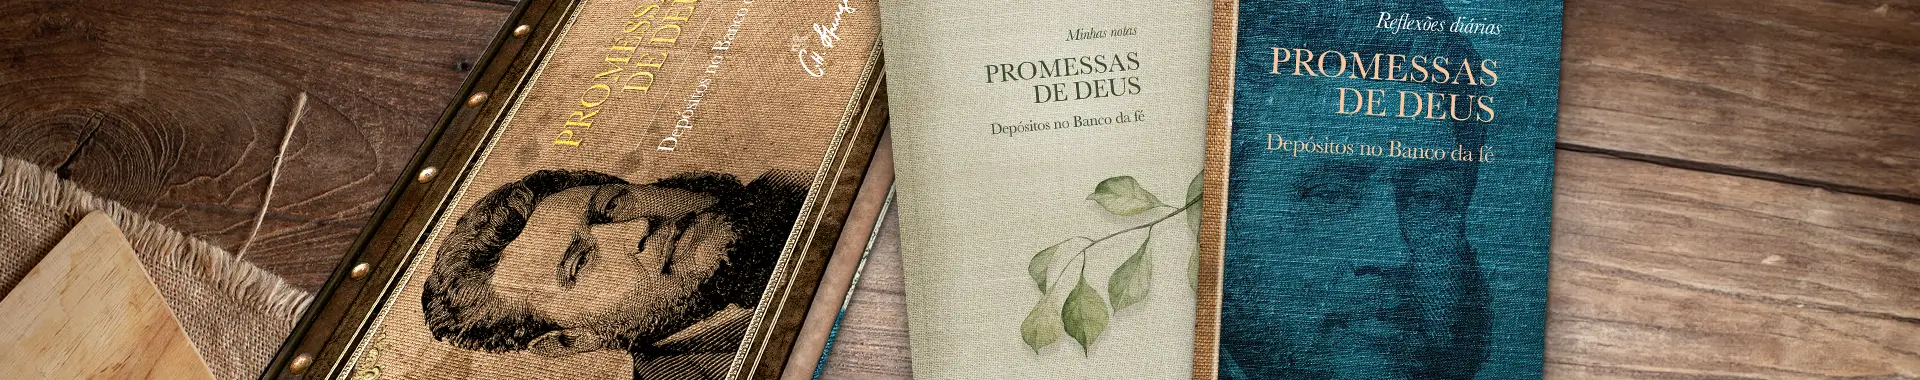 Promessas de Deus, de Charles H. Spurgeon